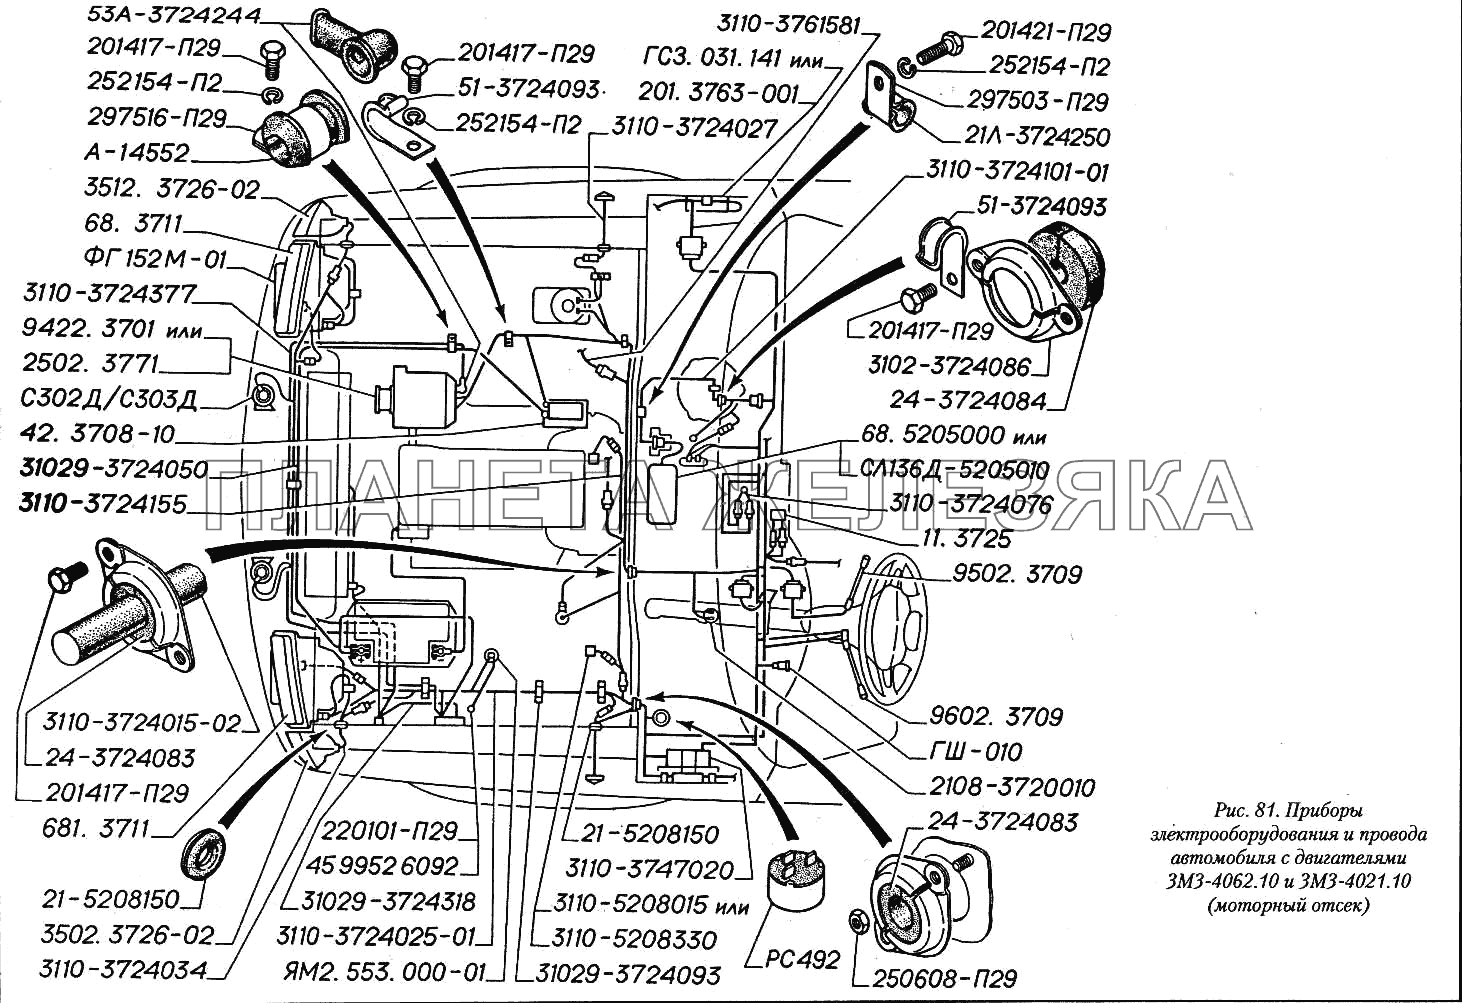 Приборы электрооборудования и провода автомобиля с двигателями ЗМЗ-4062.10 и ЗМЗ-4021.10 (моторный отсек) ГАЗ-3110